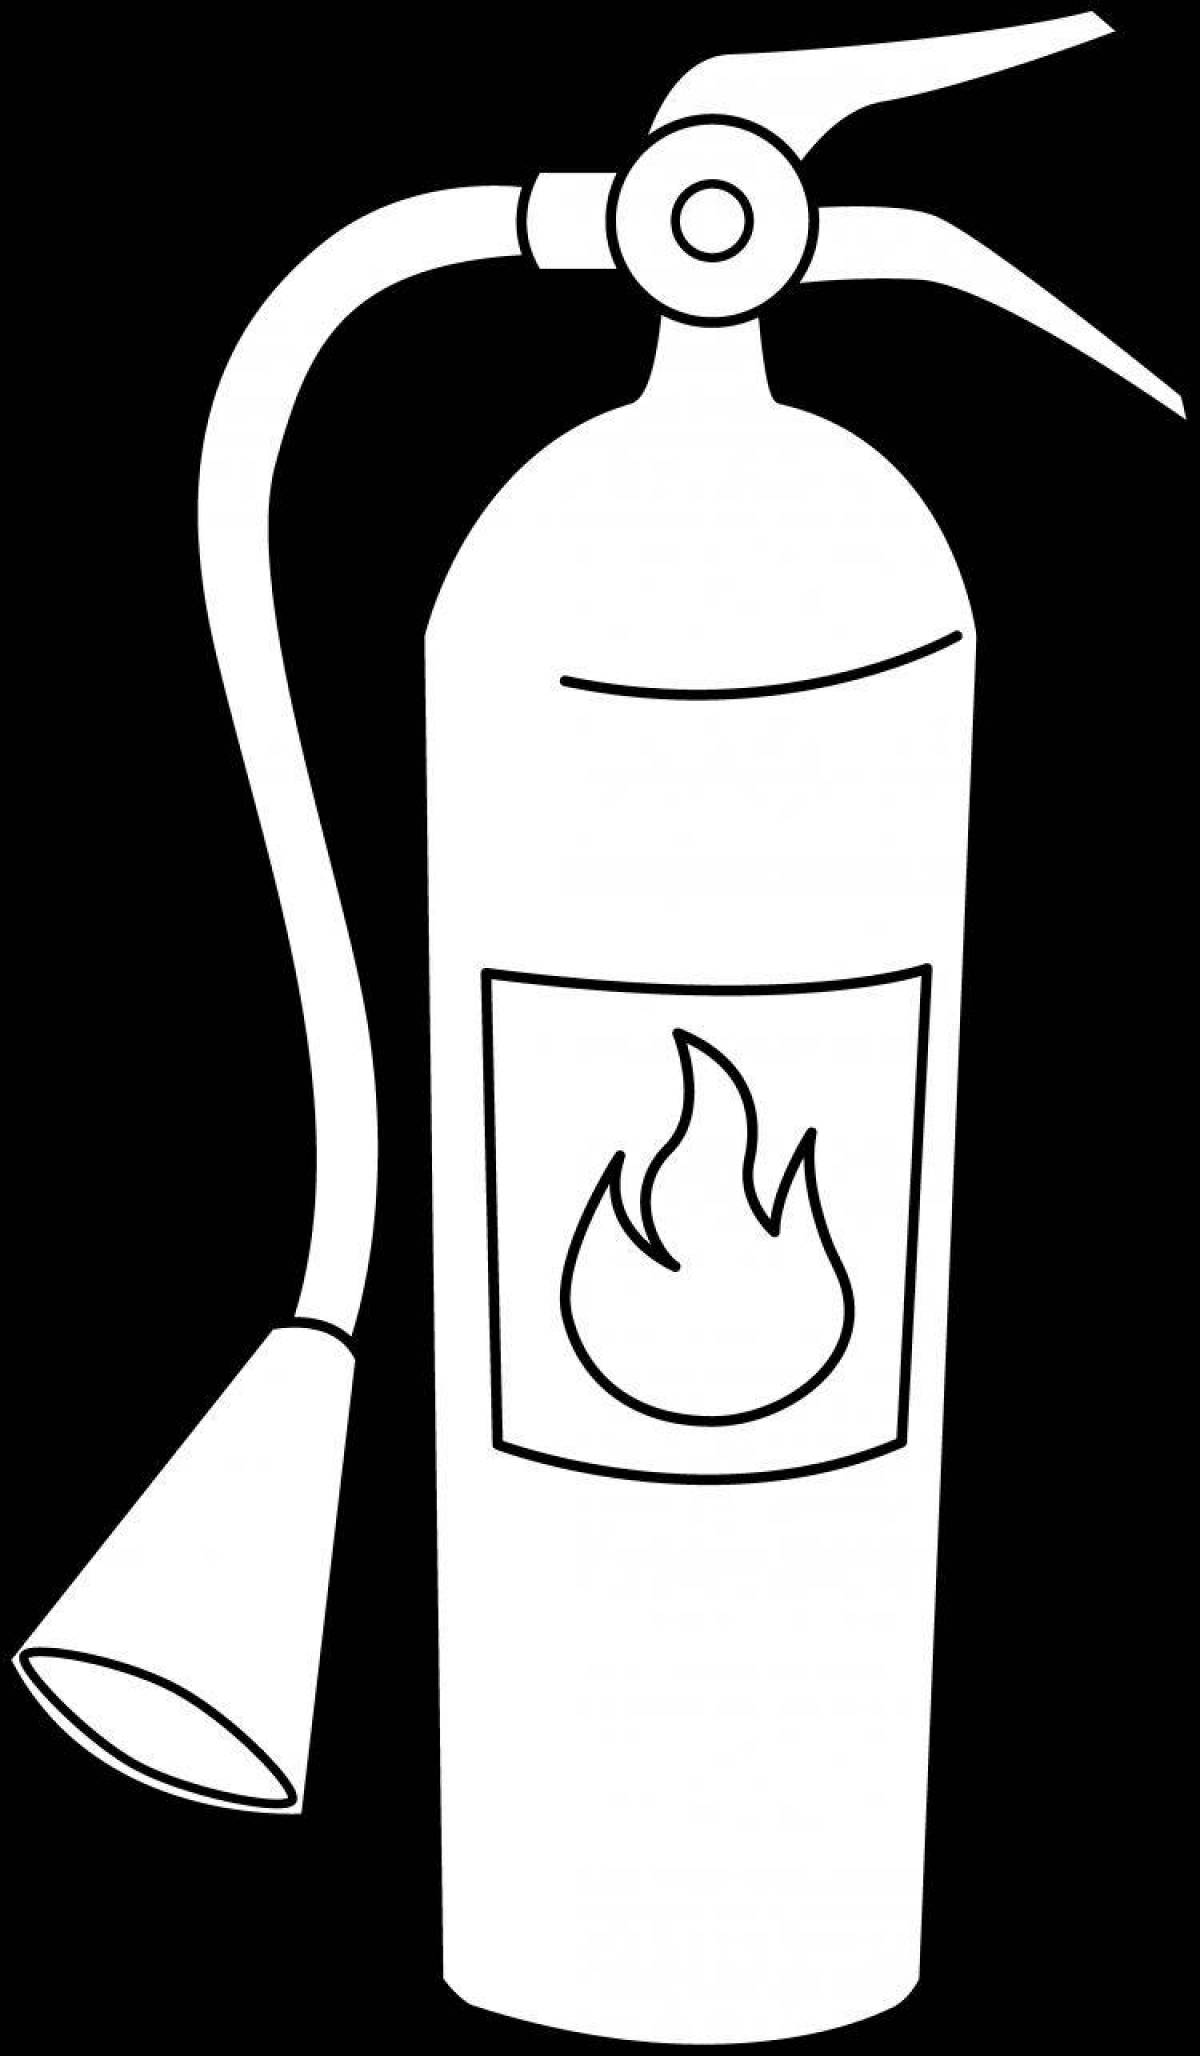 Unique fire extinguisher coloring page